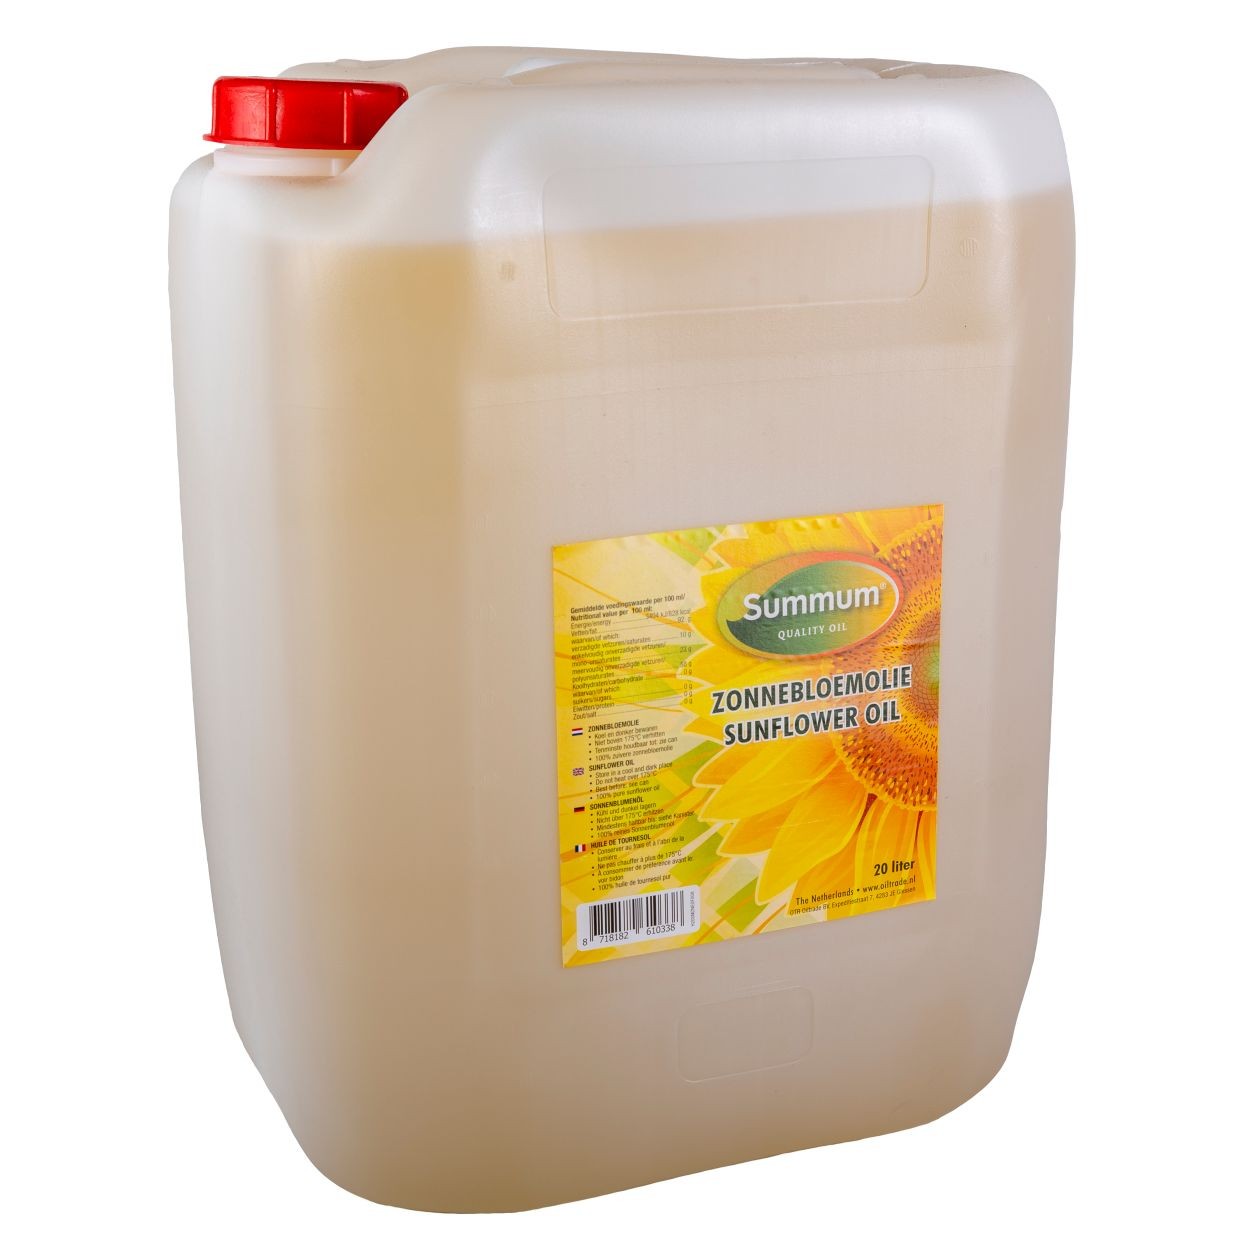 Zonnebloemolie jerrycan 20ltr. online kopen bij Natuurgroothandel